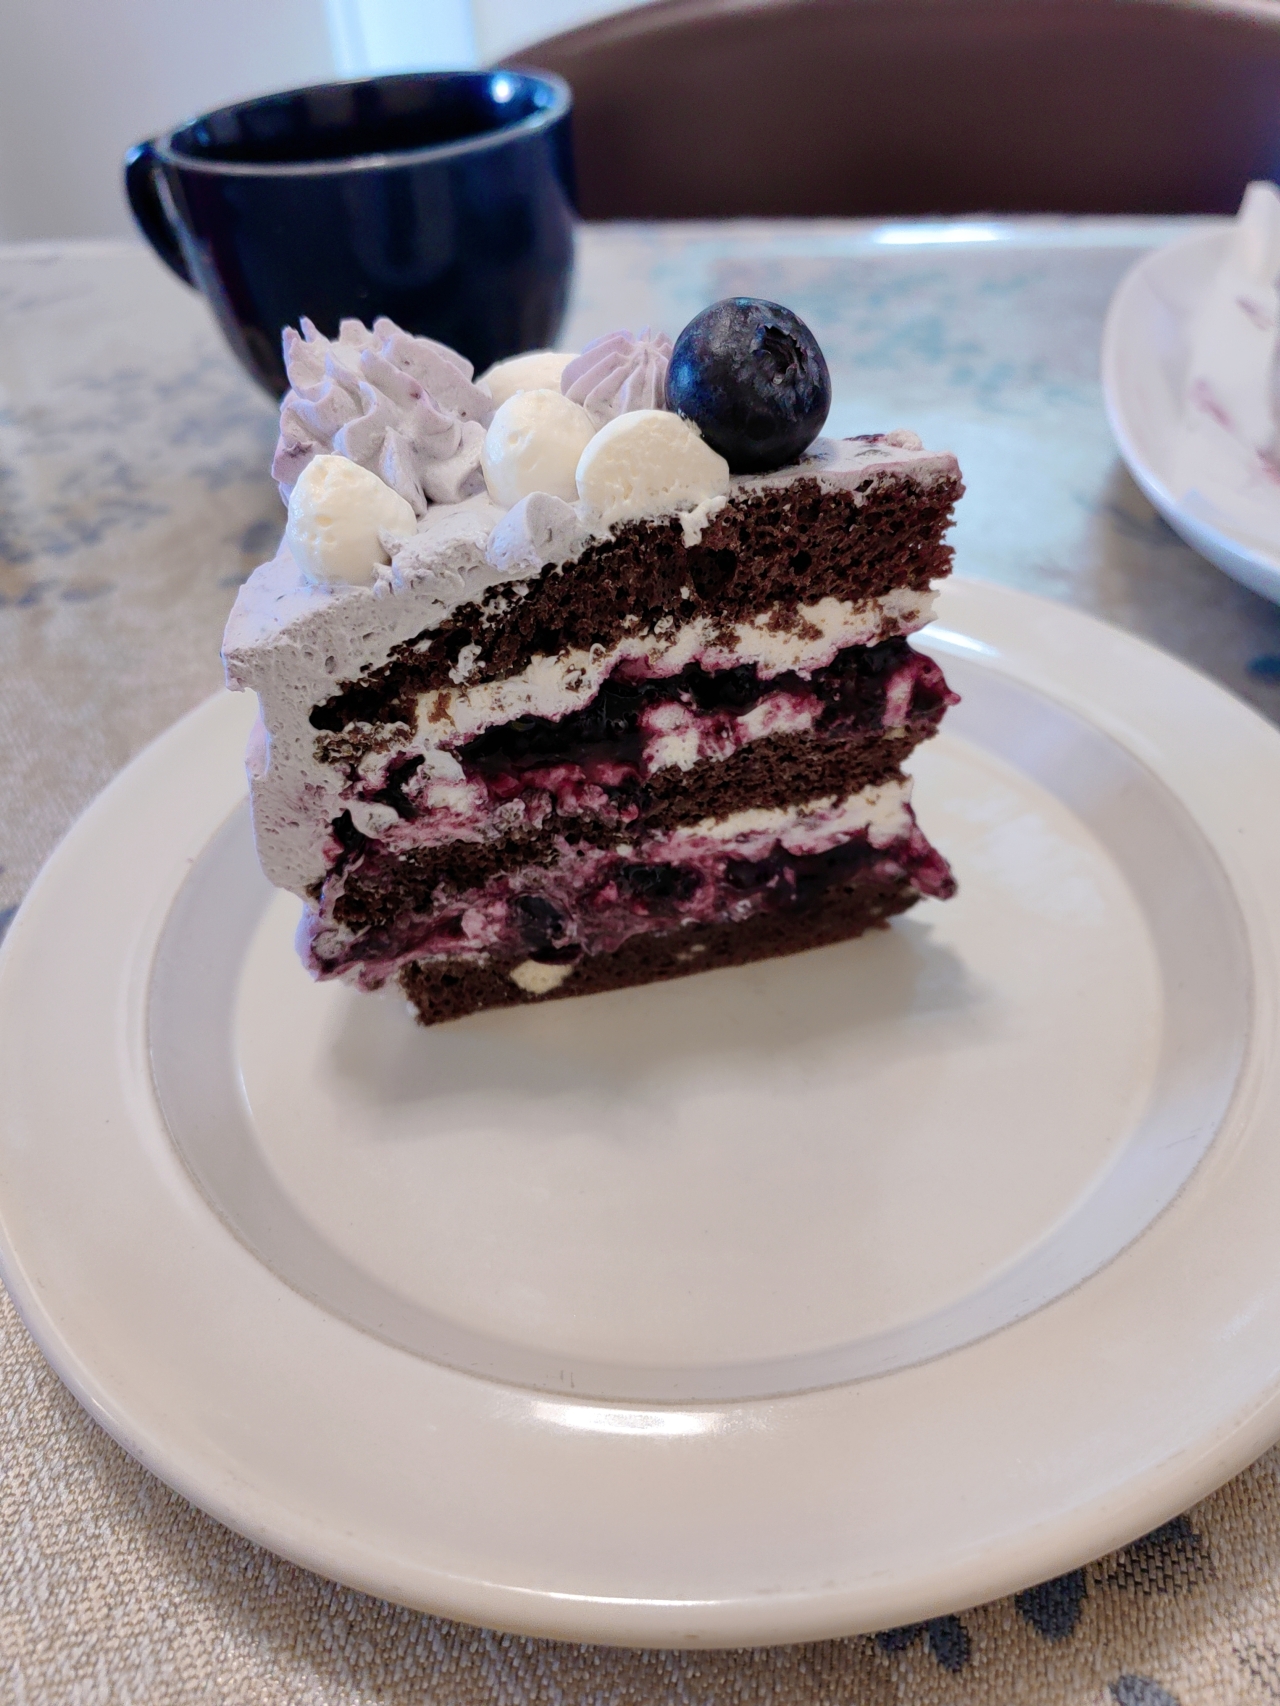 蓝莓瀑布巧克力蛋糕